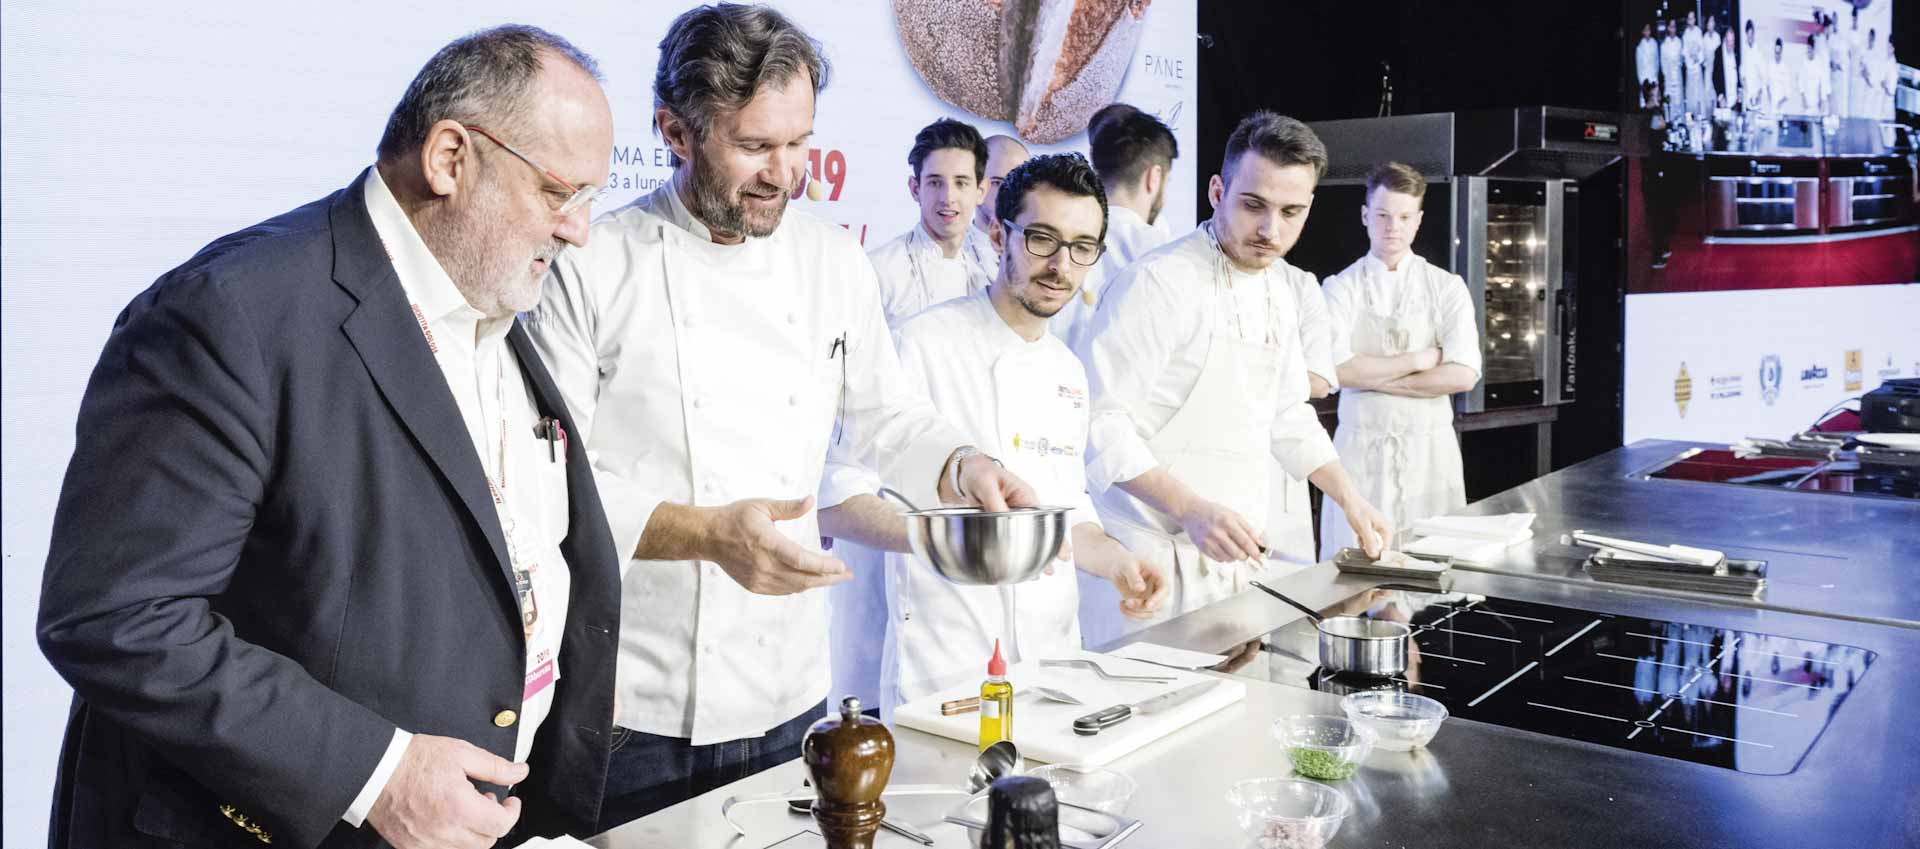 Il giornalista Paolo Marchi con lo chef Carlo Cracco durante un'edizione del congresso gastronomico Identita golose a Milano